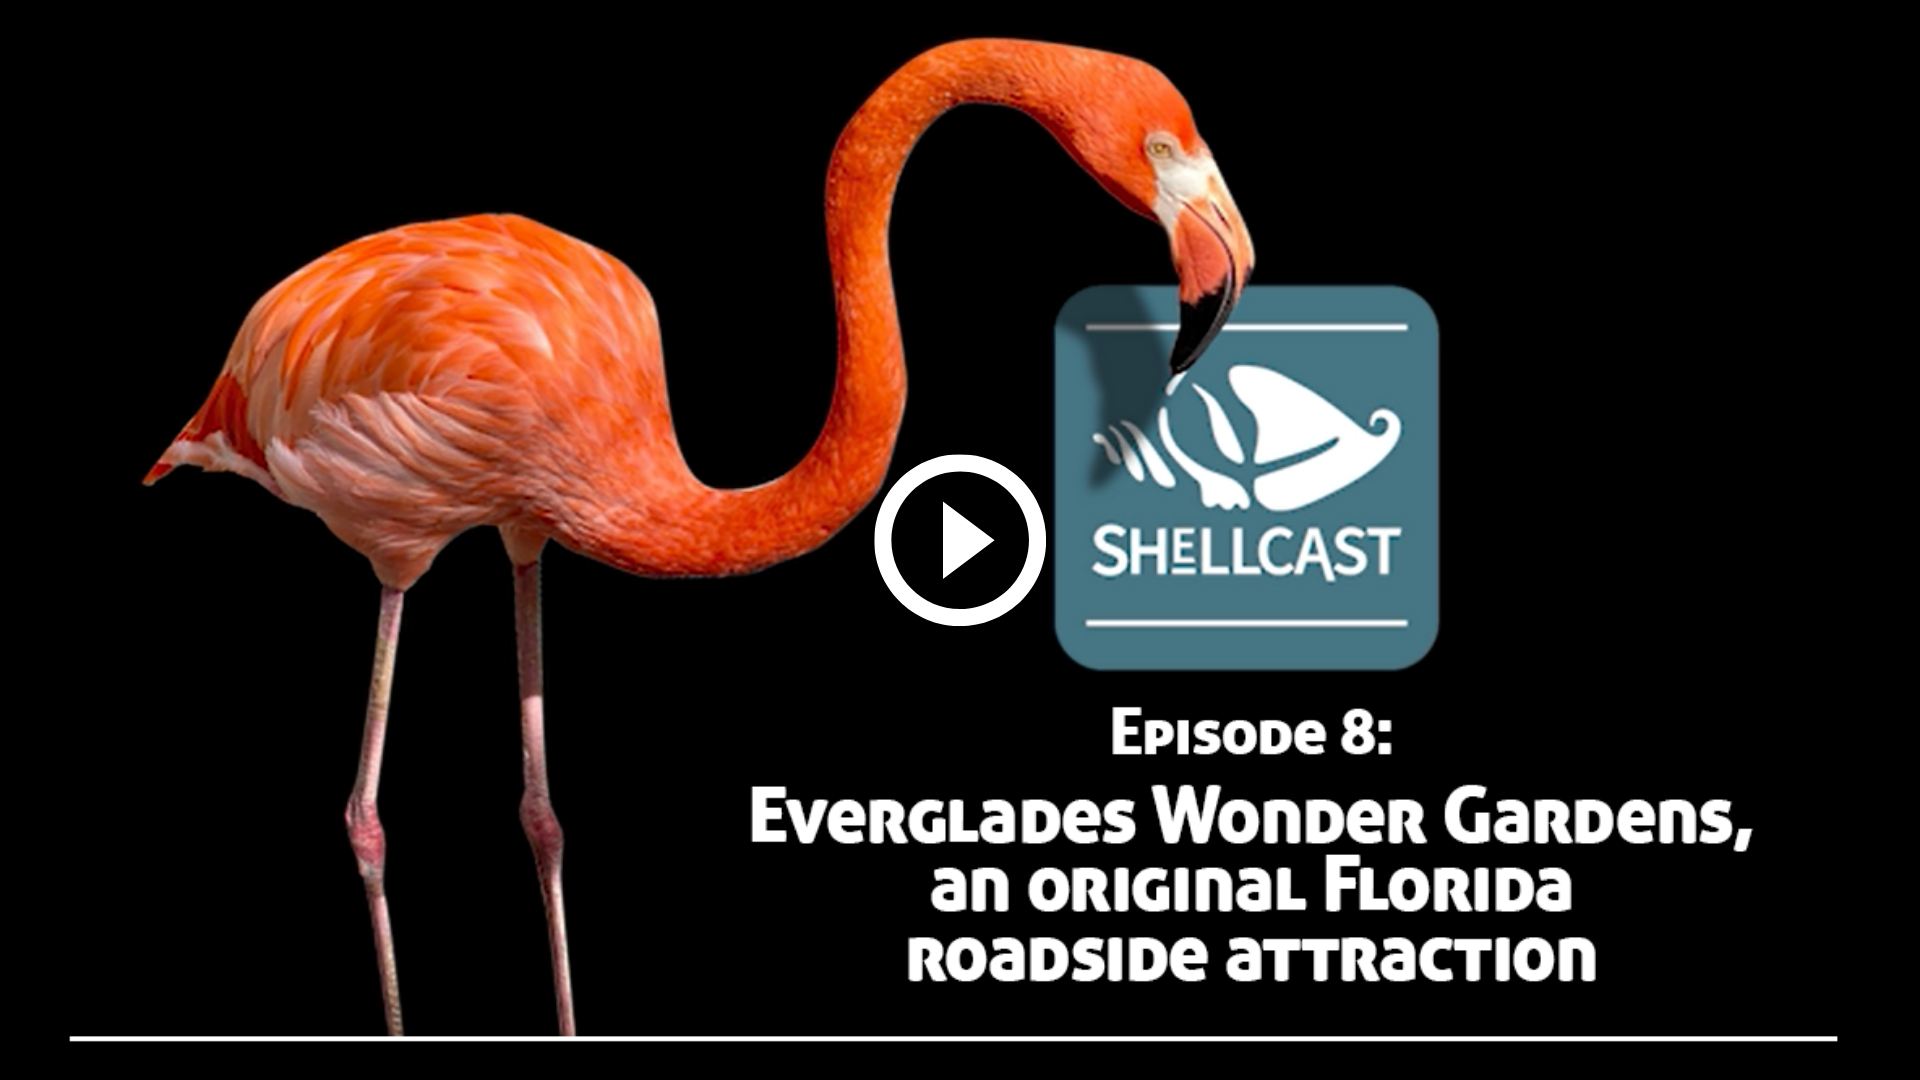 Shellcast episode 8: Everglades Wonder Gardens